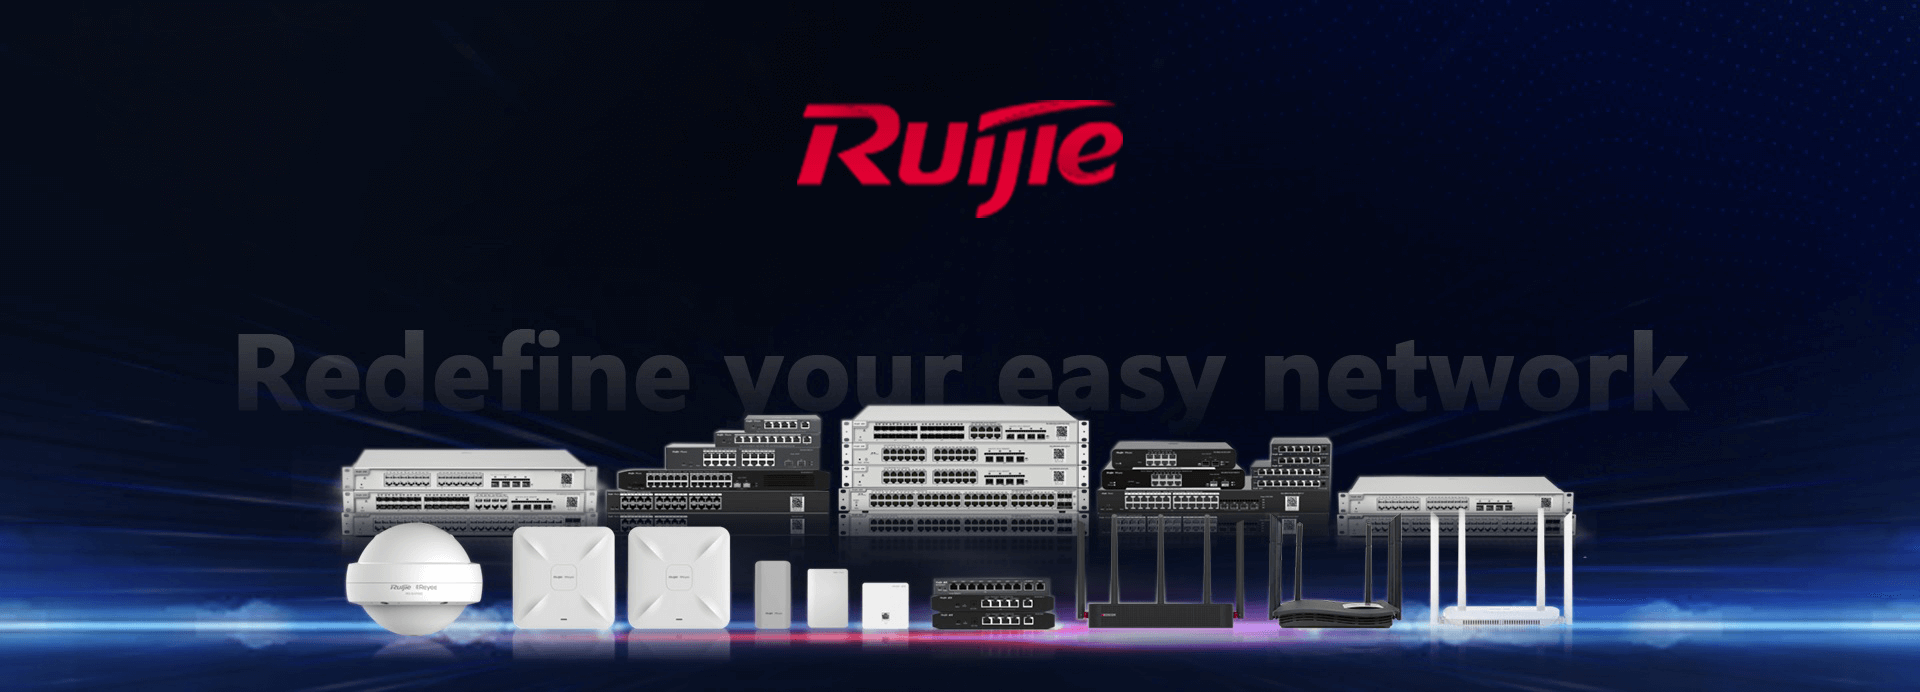 Ruijie Network Switch Dubai